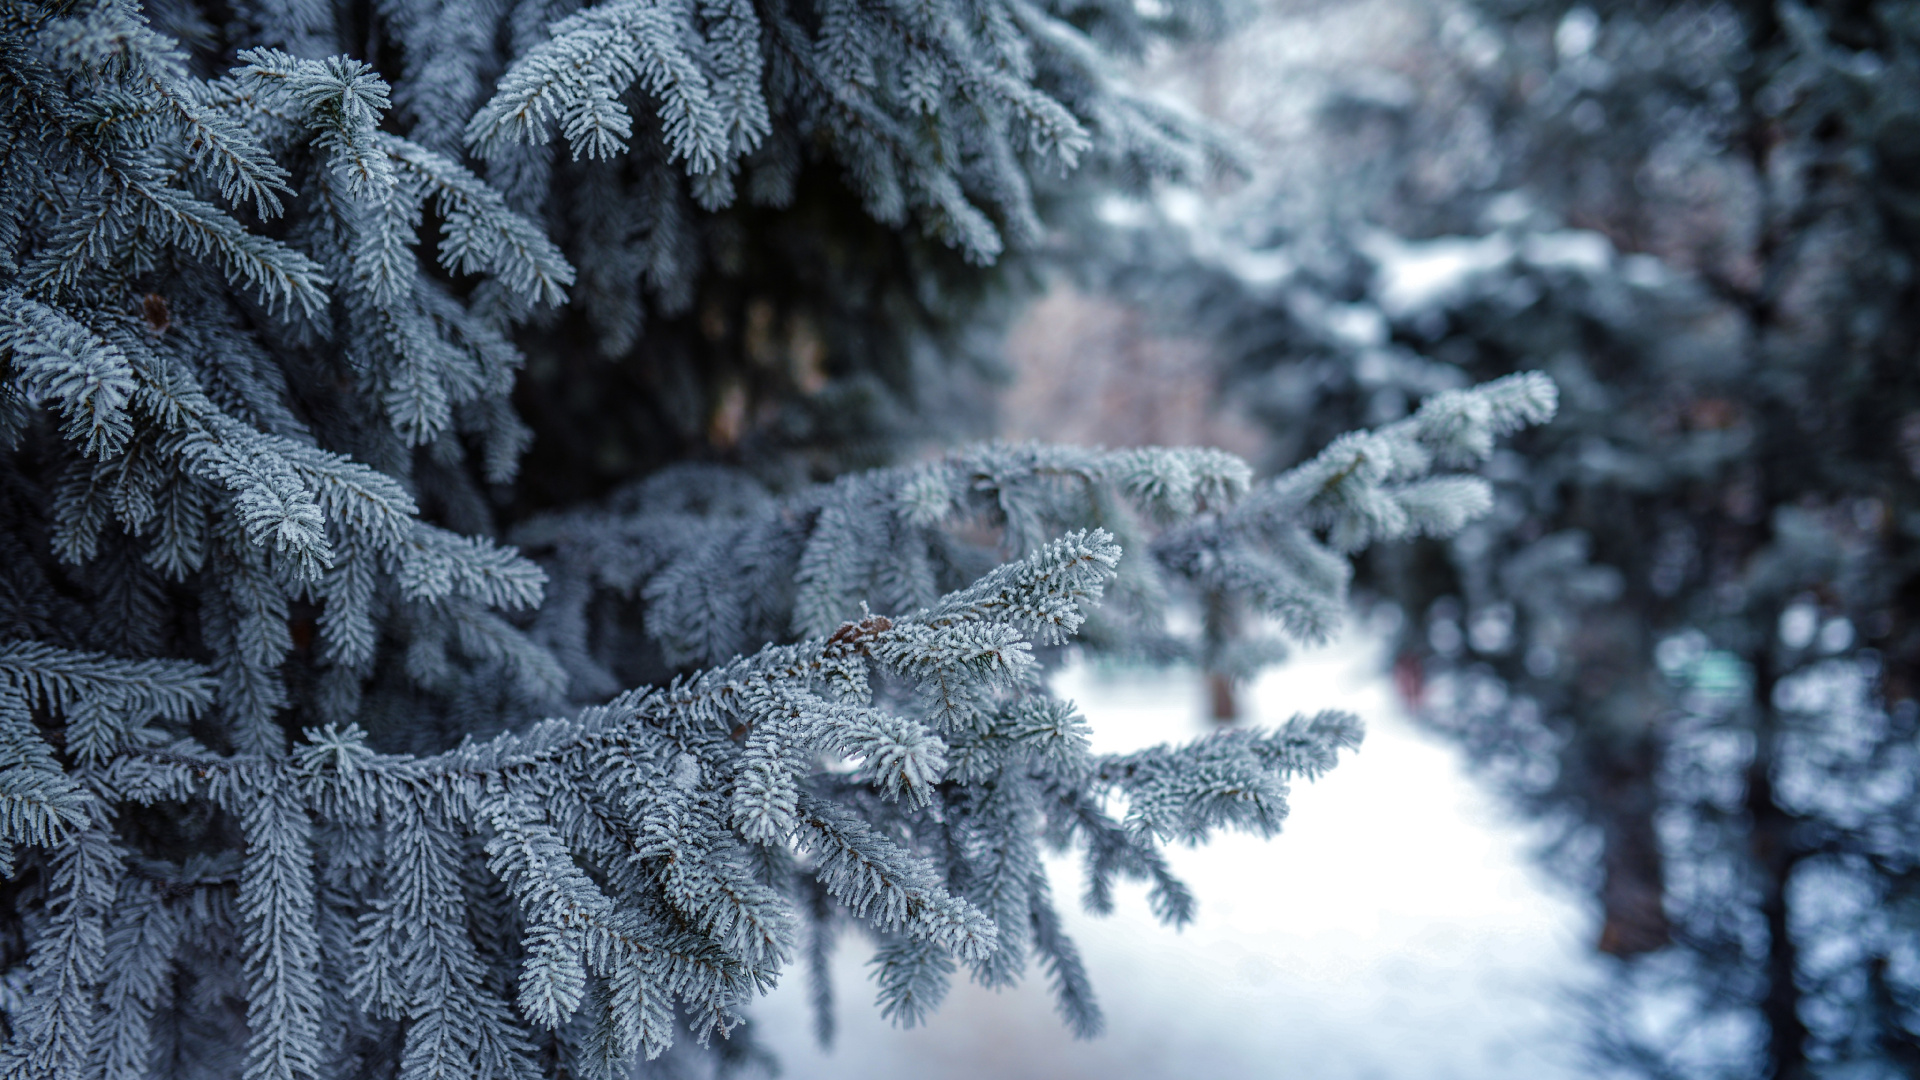 冬天, 冻结, 温带针叶林, 性质, 木本植物 壁纸 1920x1080 允许